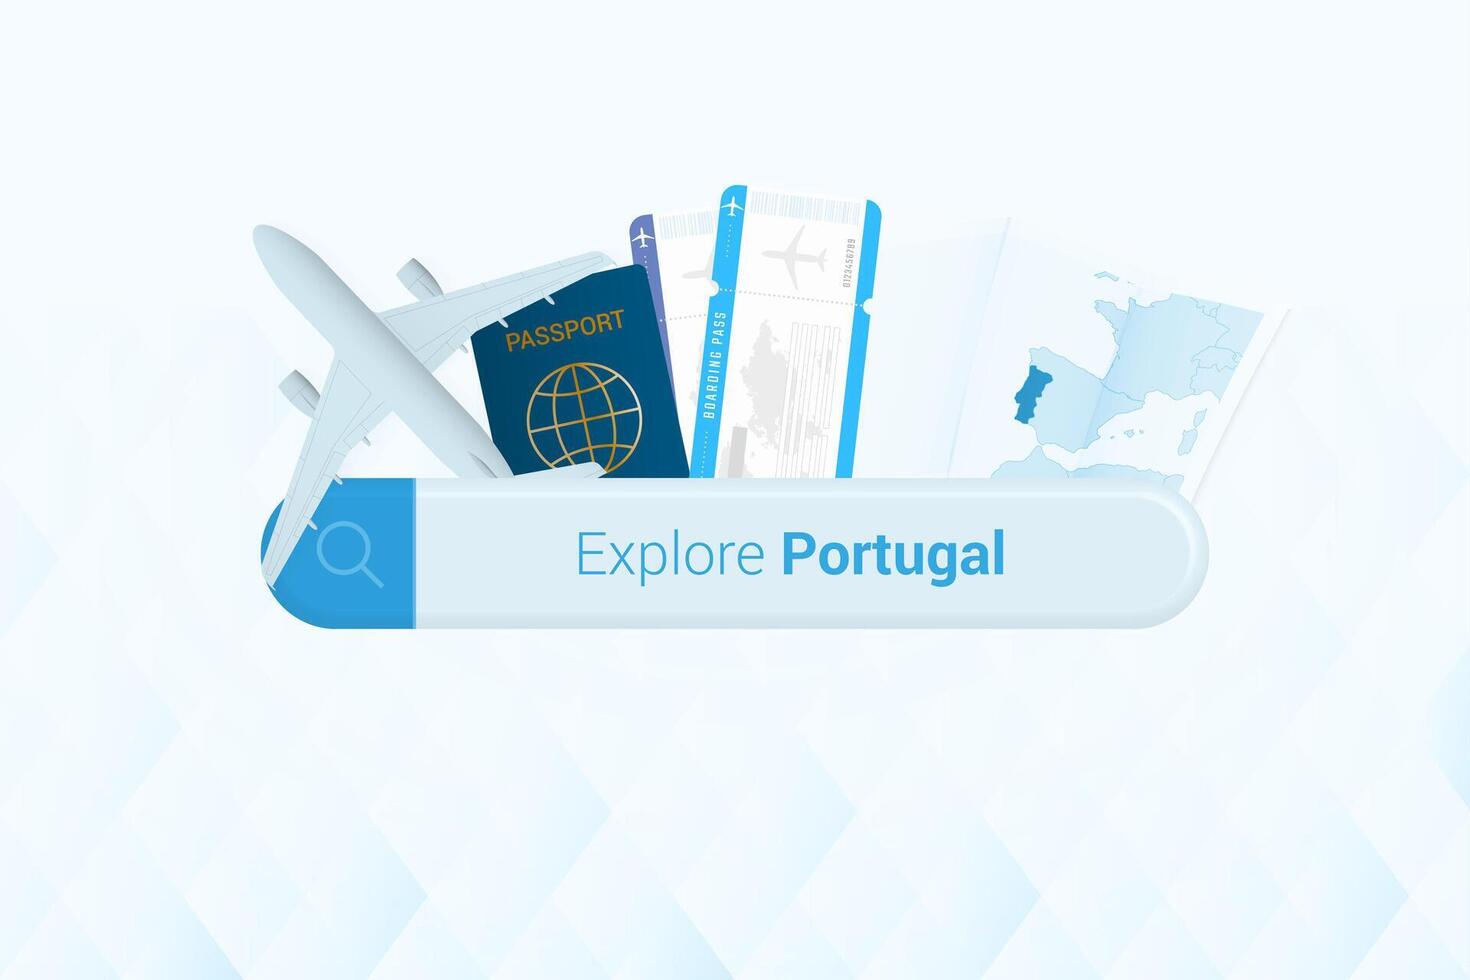 suchen Tickets zu Portugal oder Reise Ziel im Portugal. suchen Bar mit Flugzeug, Reisepass, Einsteigen passieren, Tickets und Karte. vektor